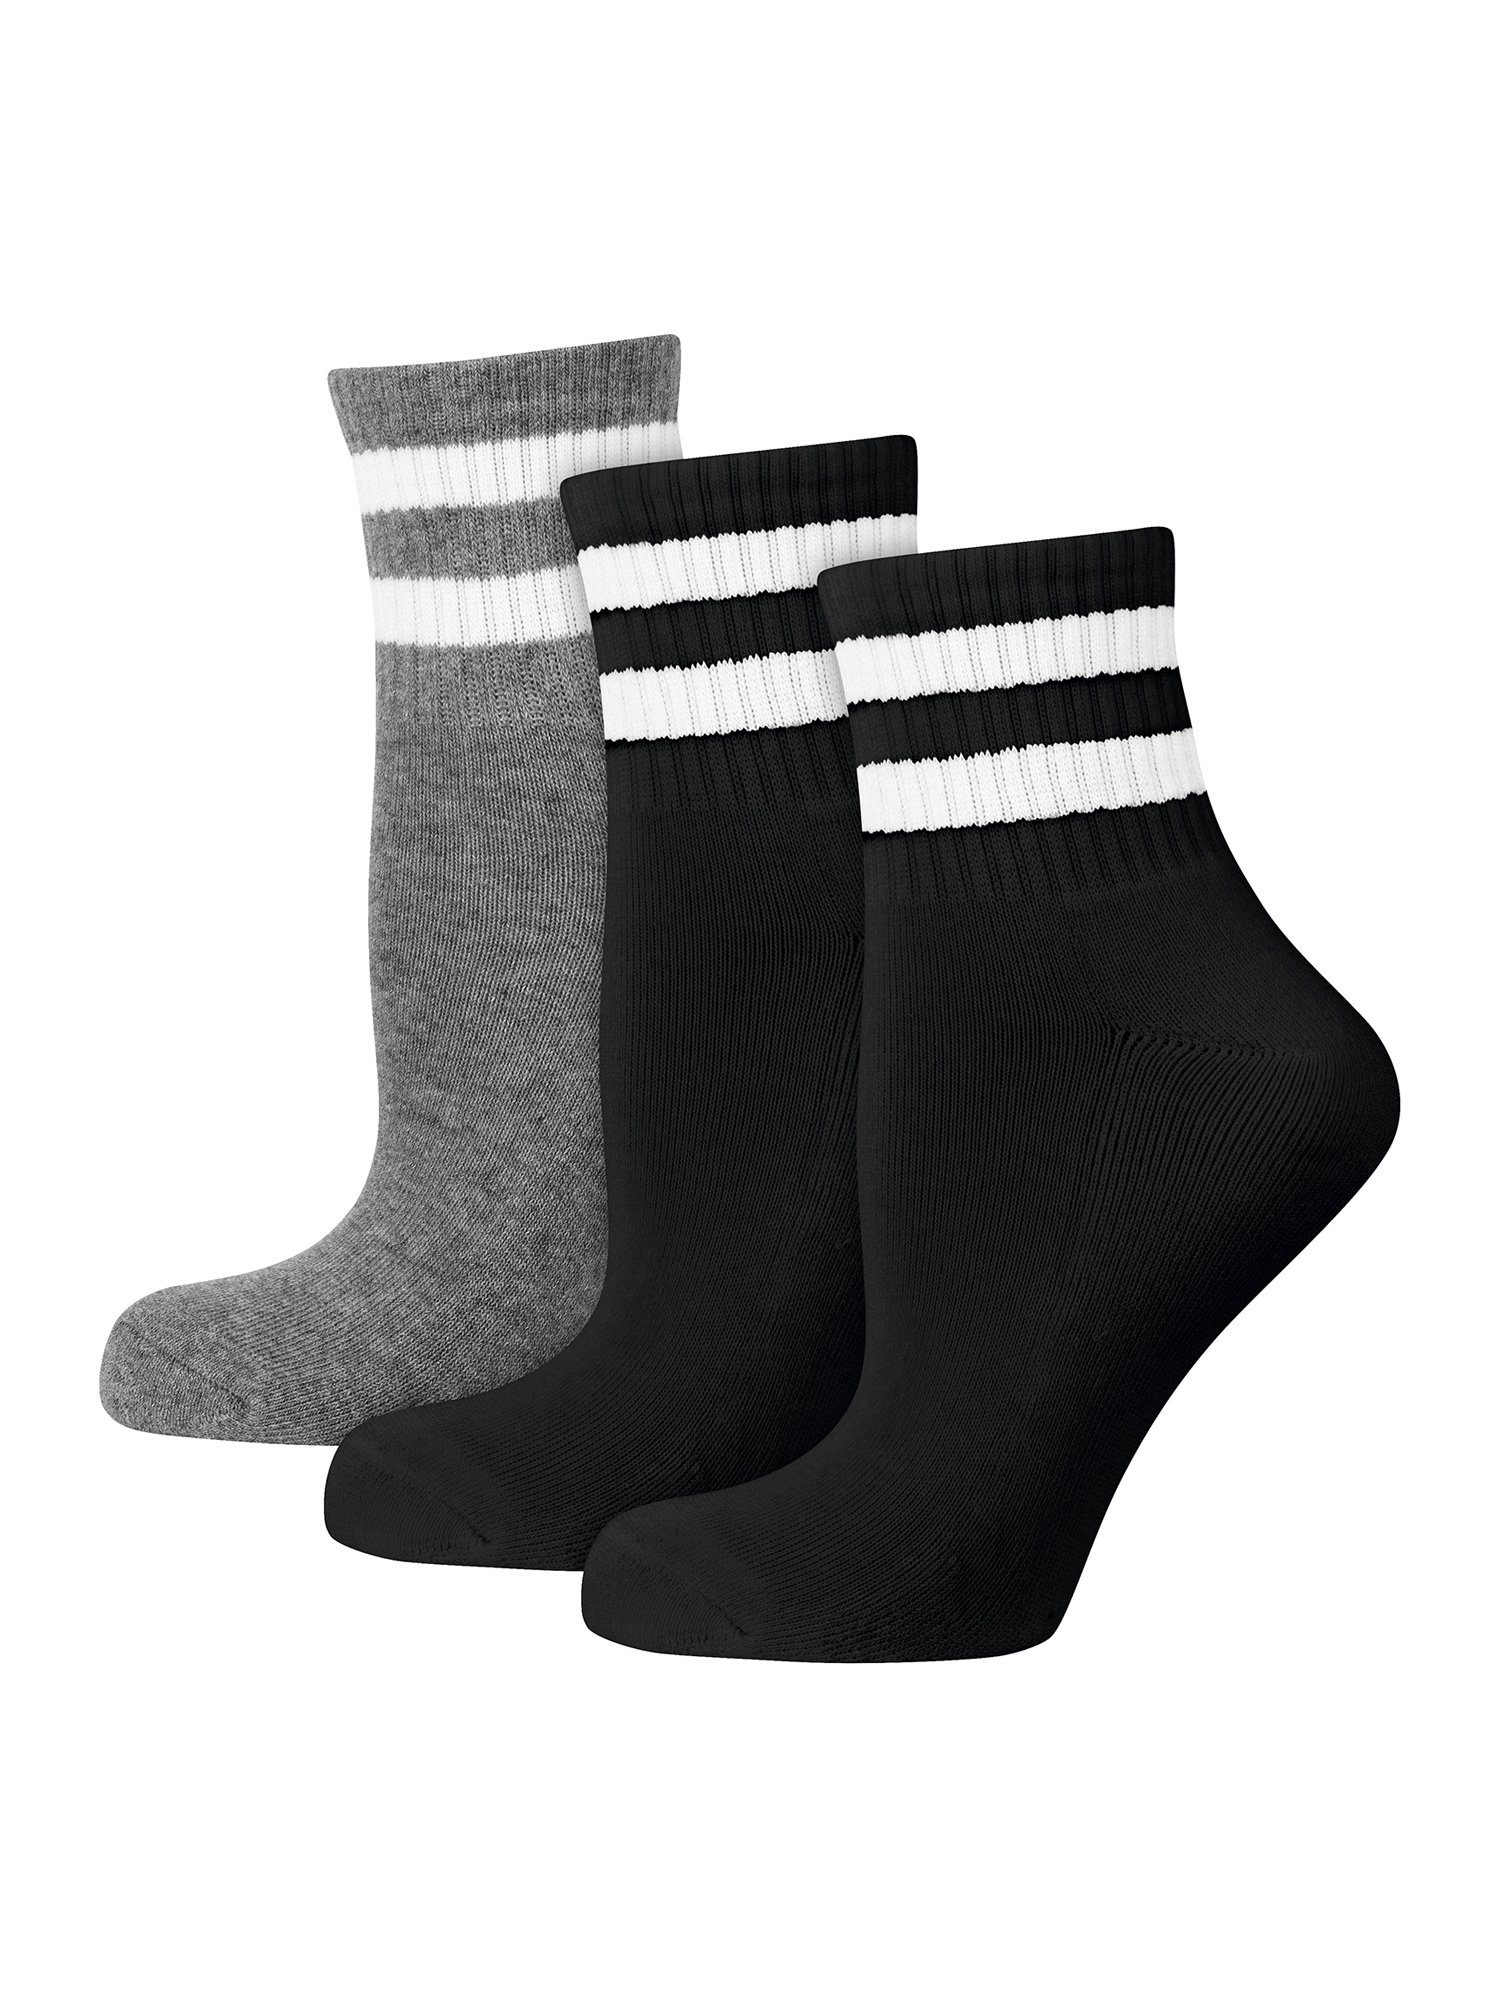 Sportsocken Freizeit Der Track Classic Tennis-Socken Short (15-Paar) schwarz/grau Nur